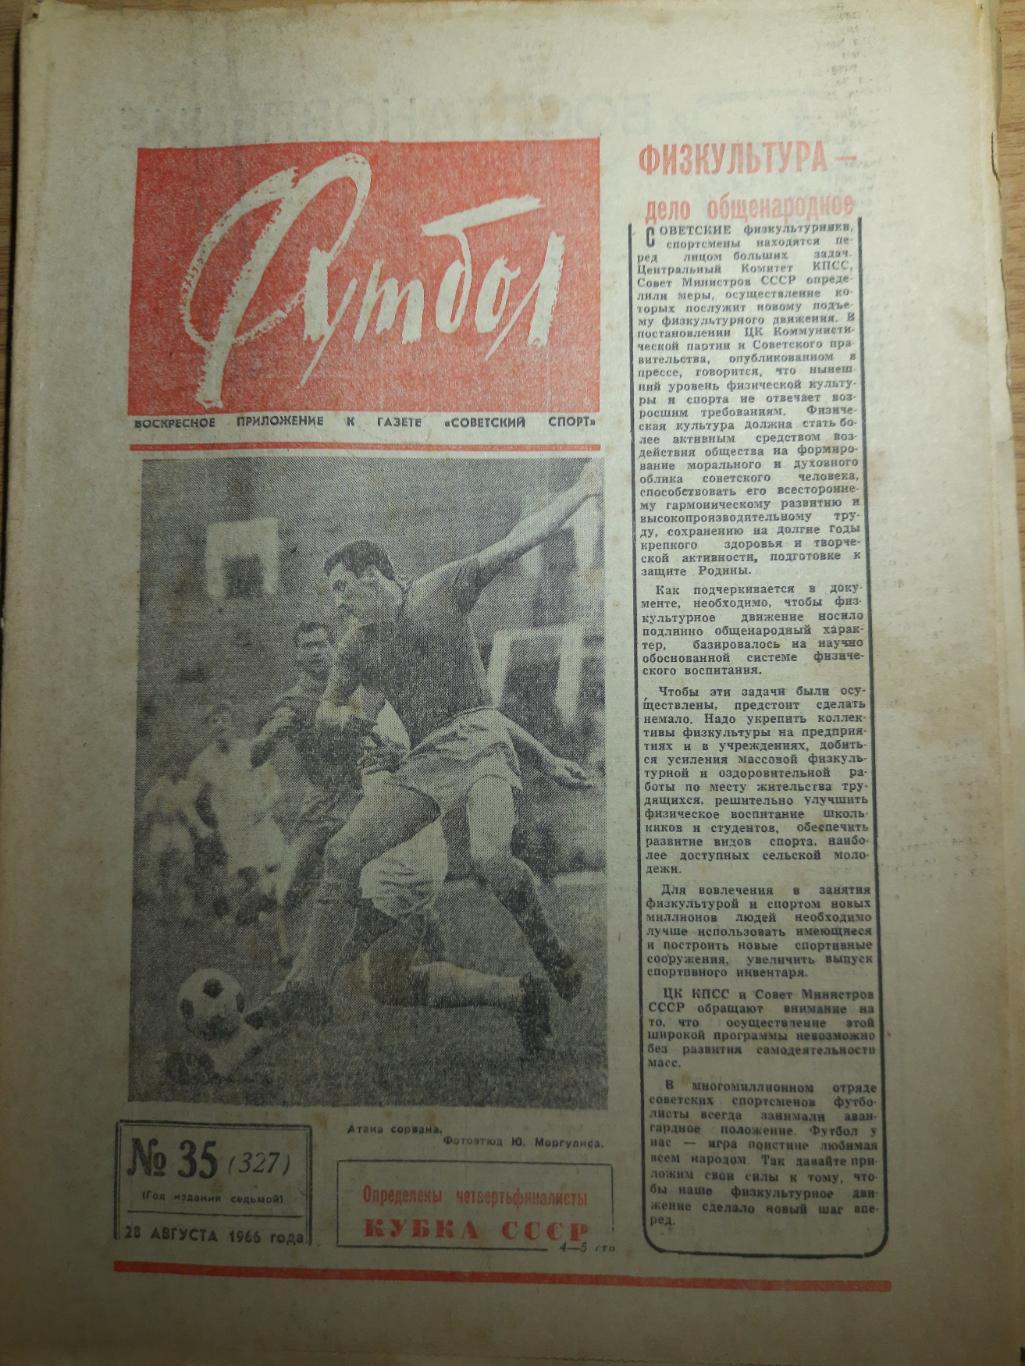 еженедельник футбол #35 1966